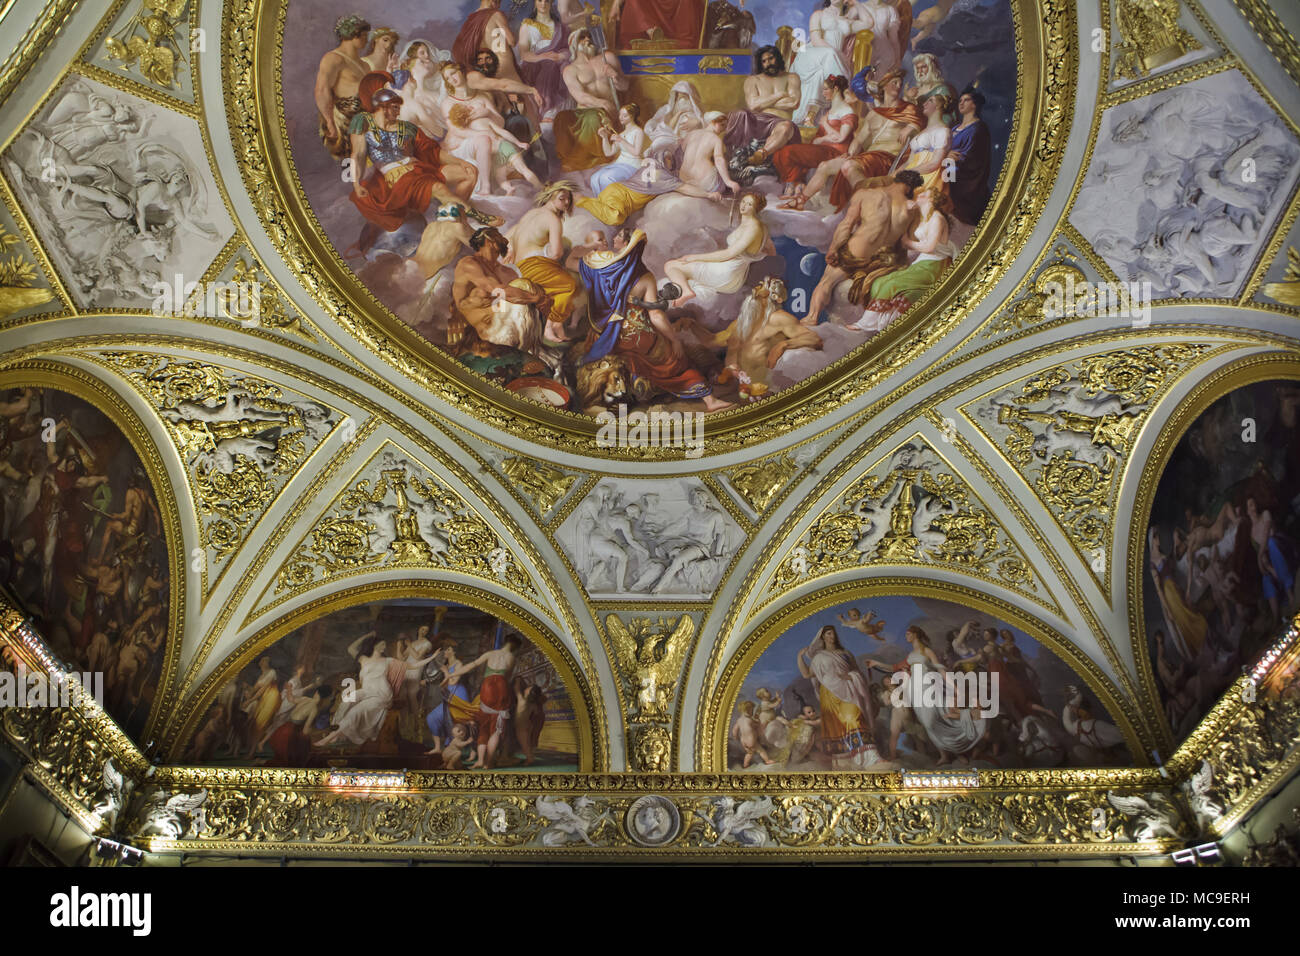 Plafond pittura dal pittore italiano Luigi Sabatelli nell'Iliade stanza della Galleria Palatina (Galleria Palatina) di Palazzo Pitti a Firenze, Toscana, Italia. Foto Stock